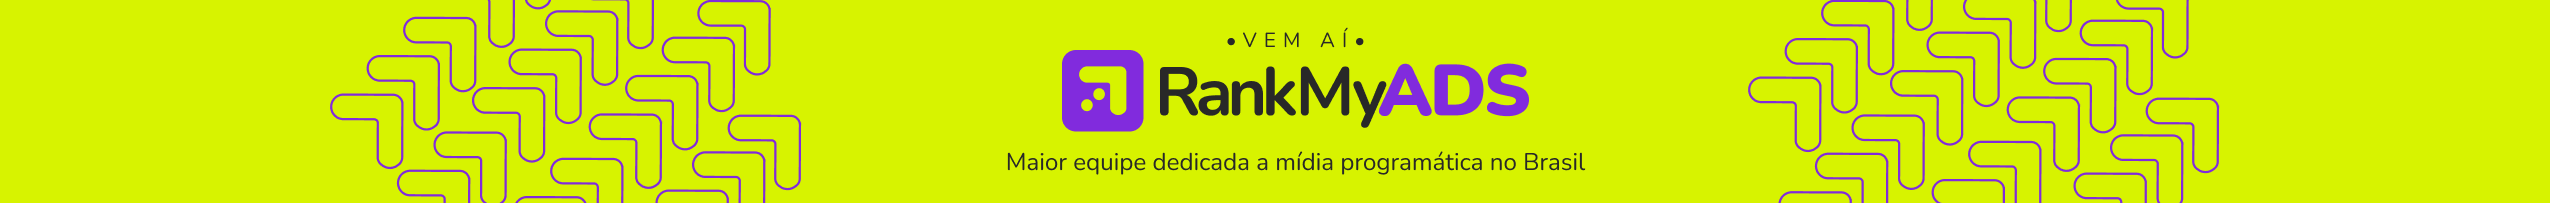 Em breve RankMyADS. A martech com a maior equipe dedicada a mídia programática no Brasil